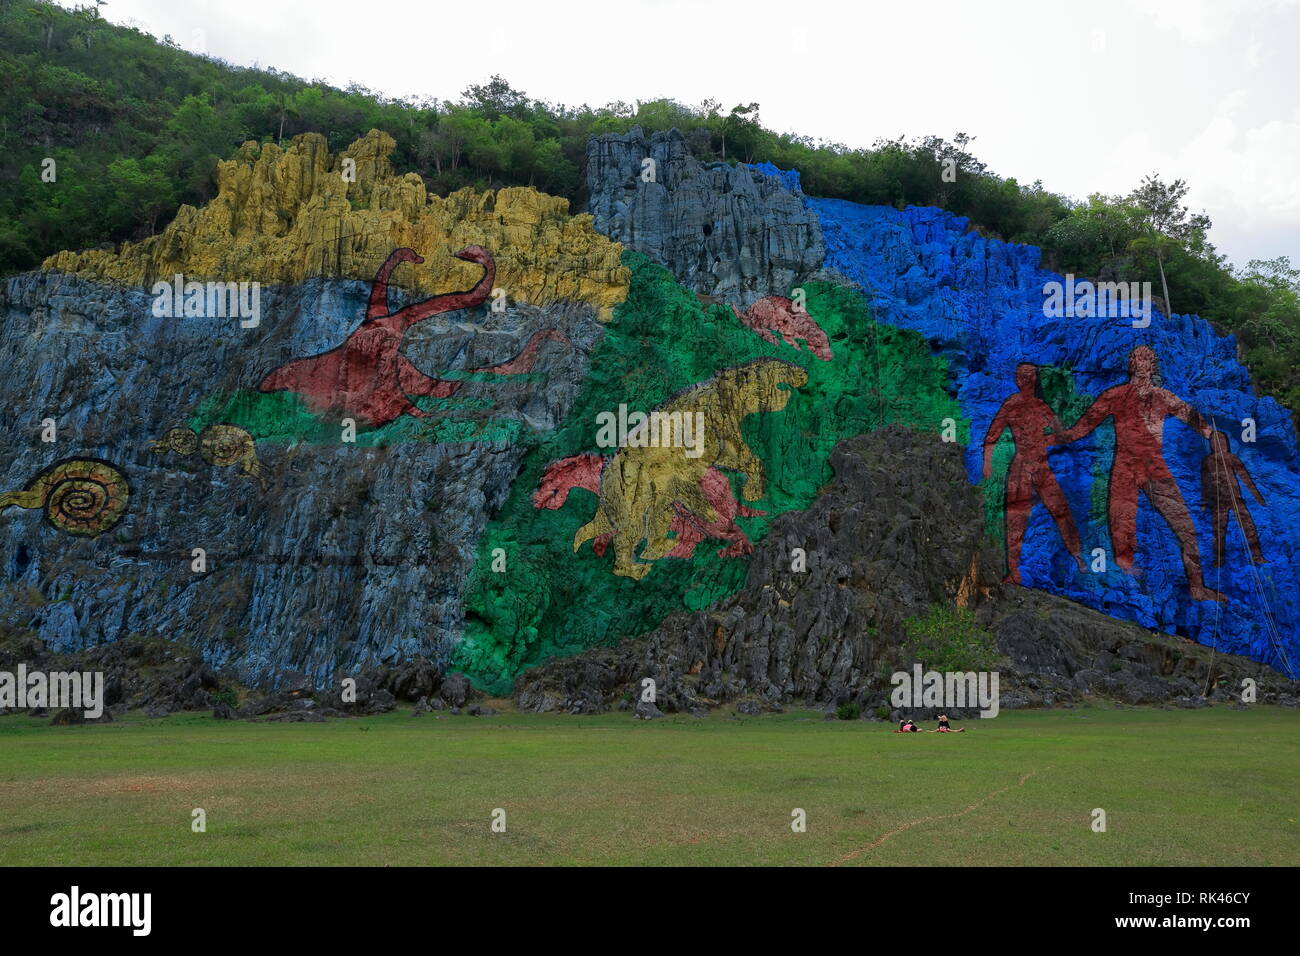 Mural de la Prehistoria, Vinales, Cuba - Prehistoric wall painting di Vinales Valley. Si tratta di una rappresentazione di evoluzione biologica. Foto Stock